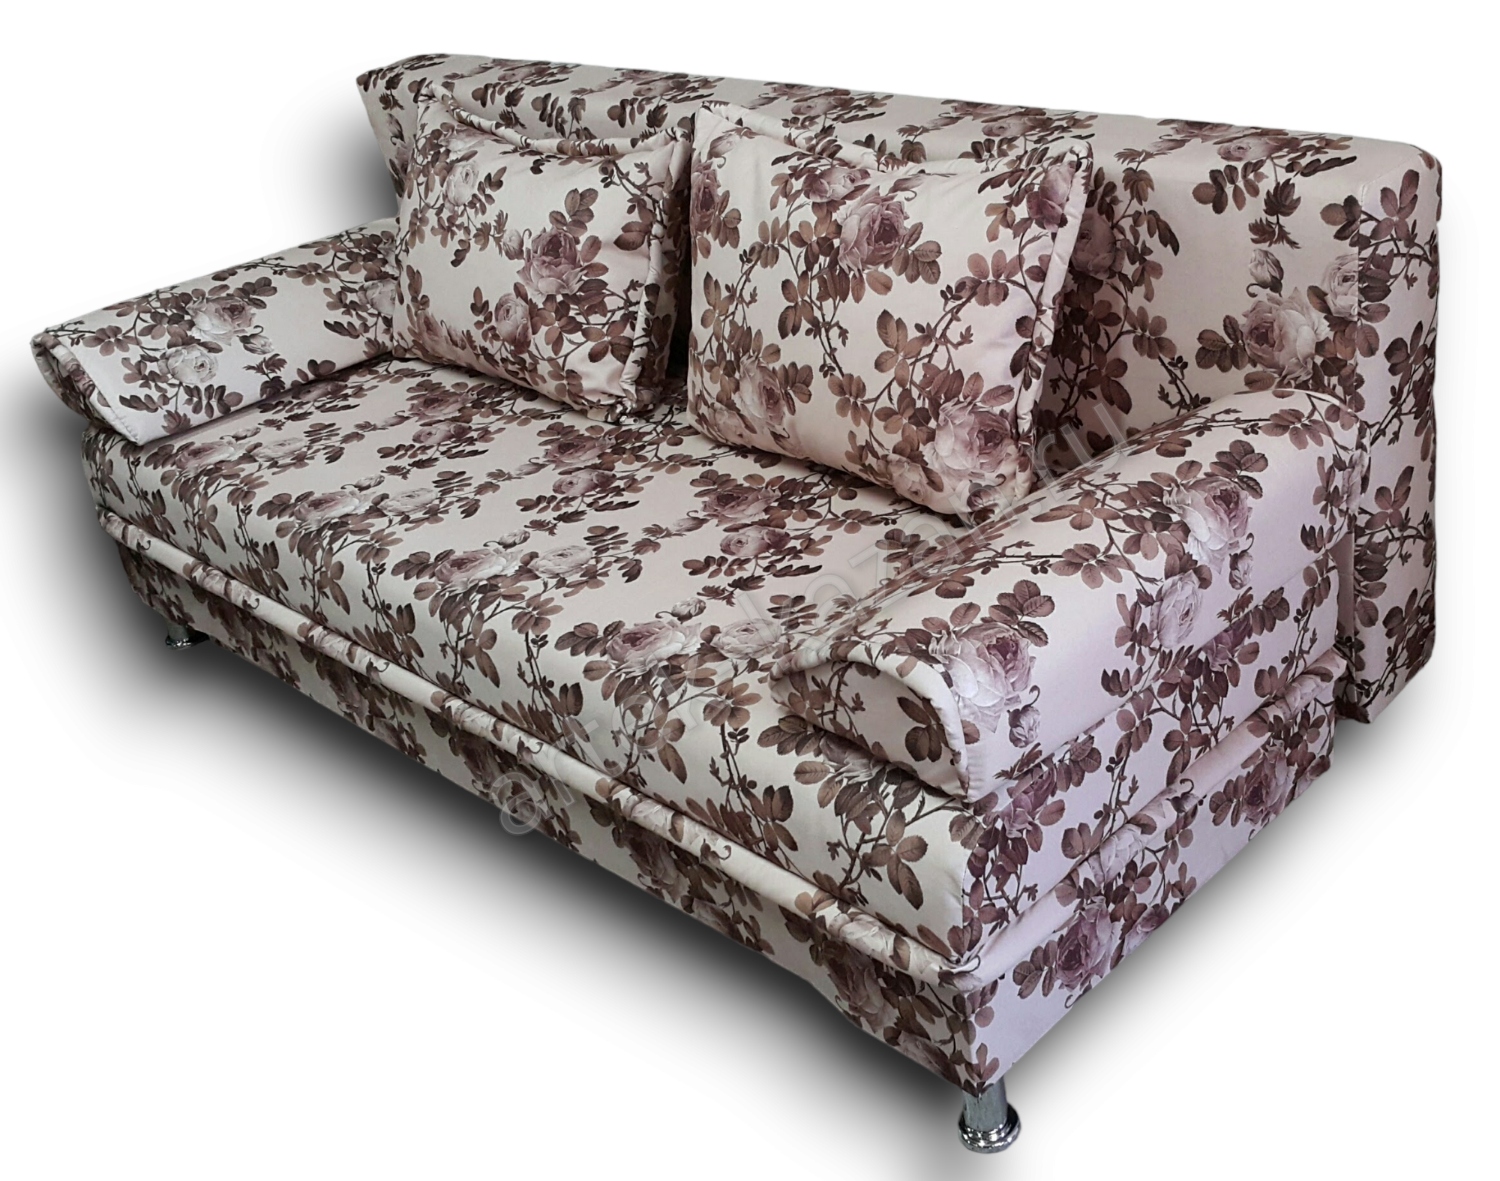 диван еврокнижка Эконом фото № 3. Купить недорогой диван по низкой цене от производителя можно у нас.